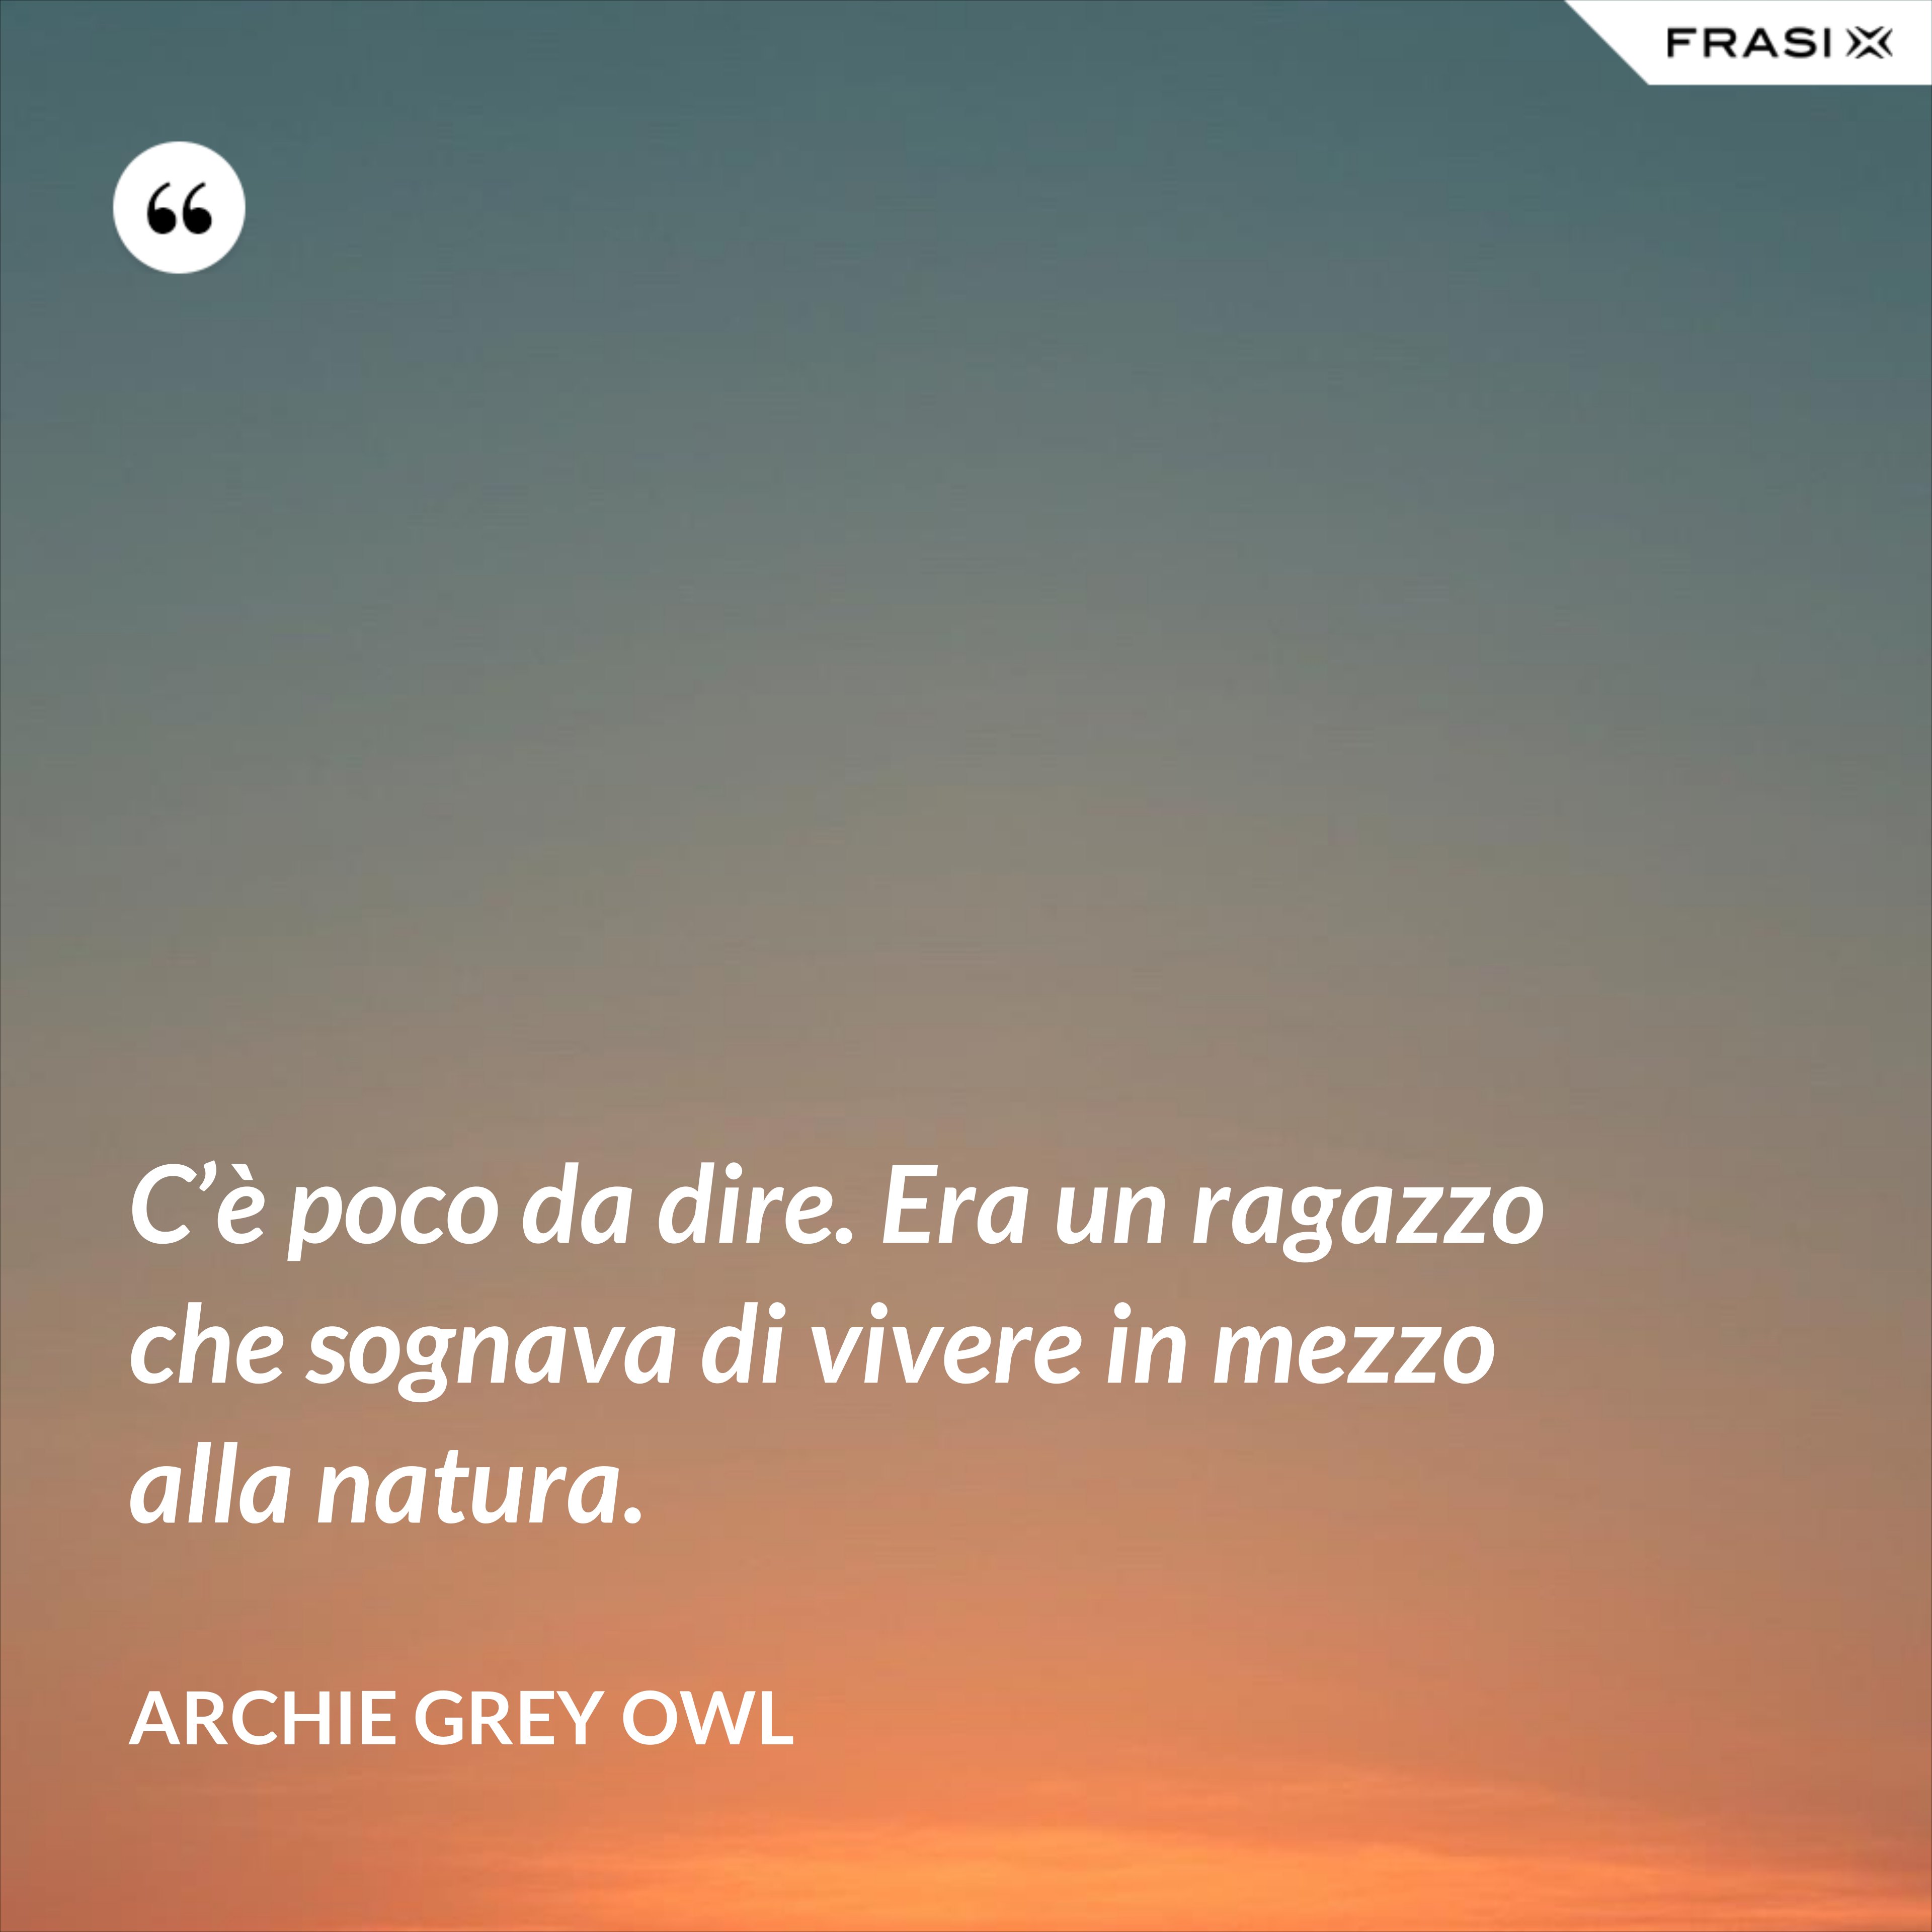 C’è poco da dire. Era un ragazzo che sognava di vivere in mezzo alla natura. - Archie Grey Owl